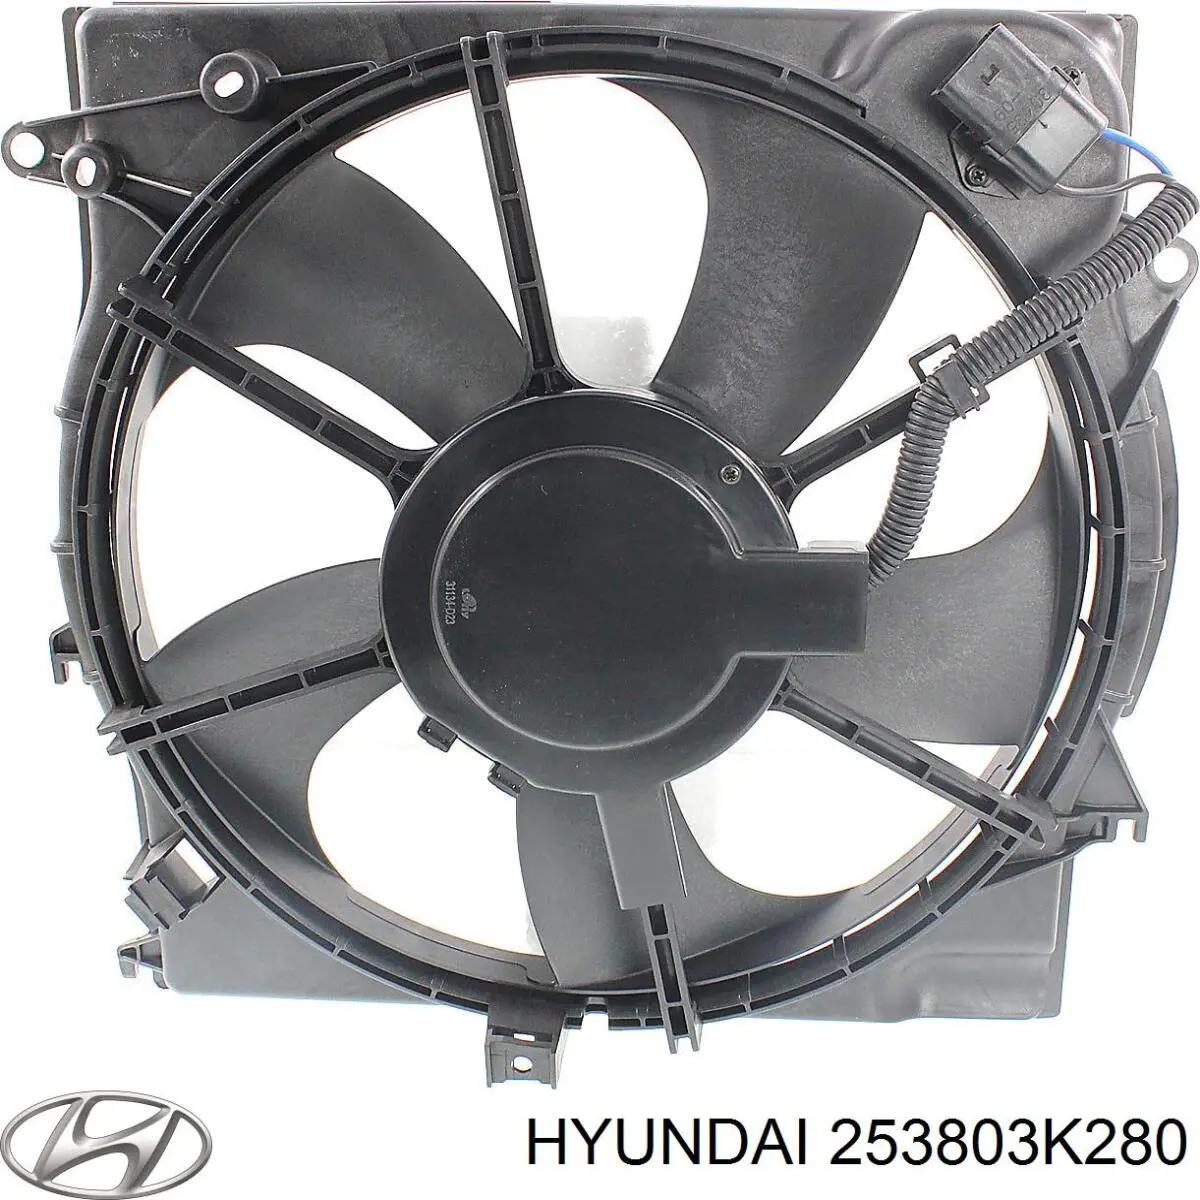 25380-3K280 Hyundai/Kia difusor de radiador, ventilador de refrigeración, condensador del aire acondicionado, completo con motor y rodete